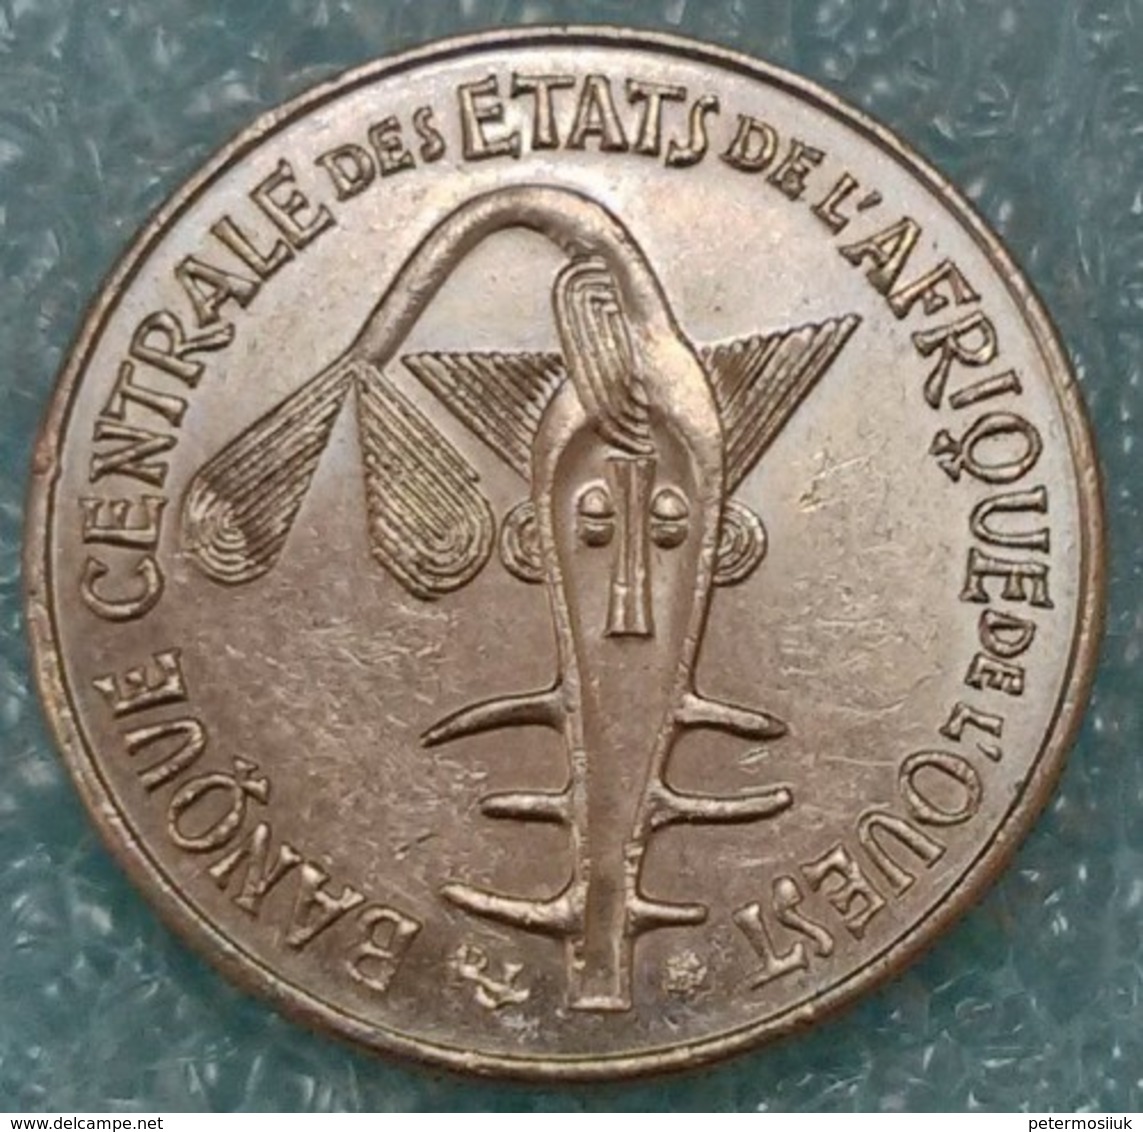 Western Africa (BCEAO) 50 Francs, 1987 -2457 - Autres – Afrique